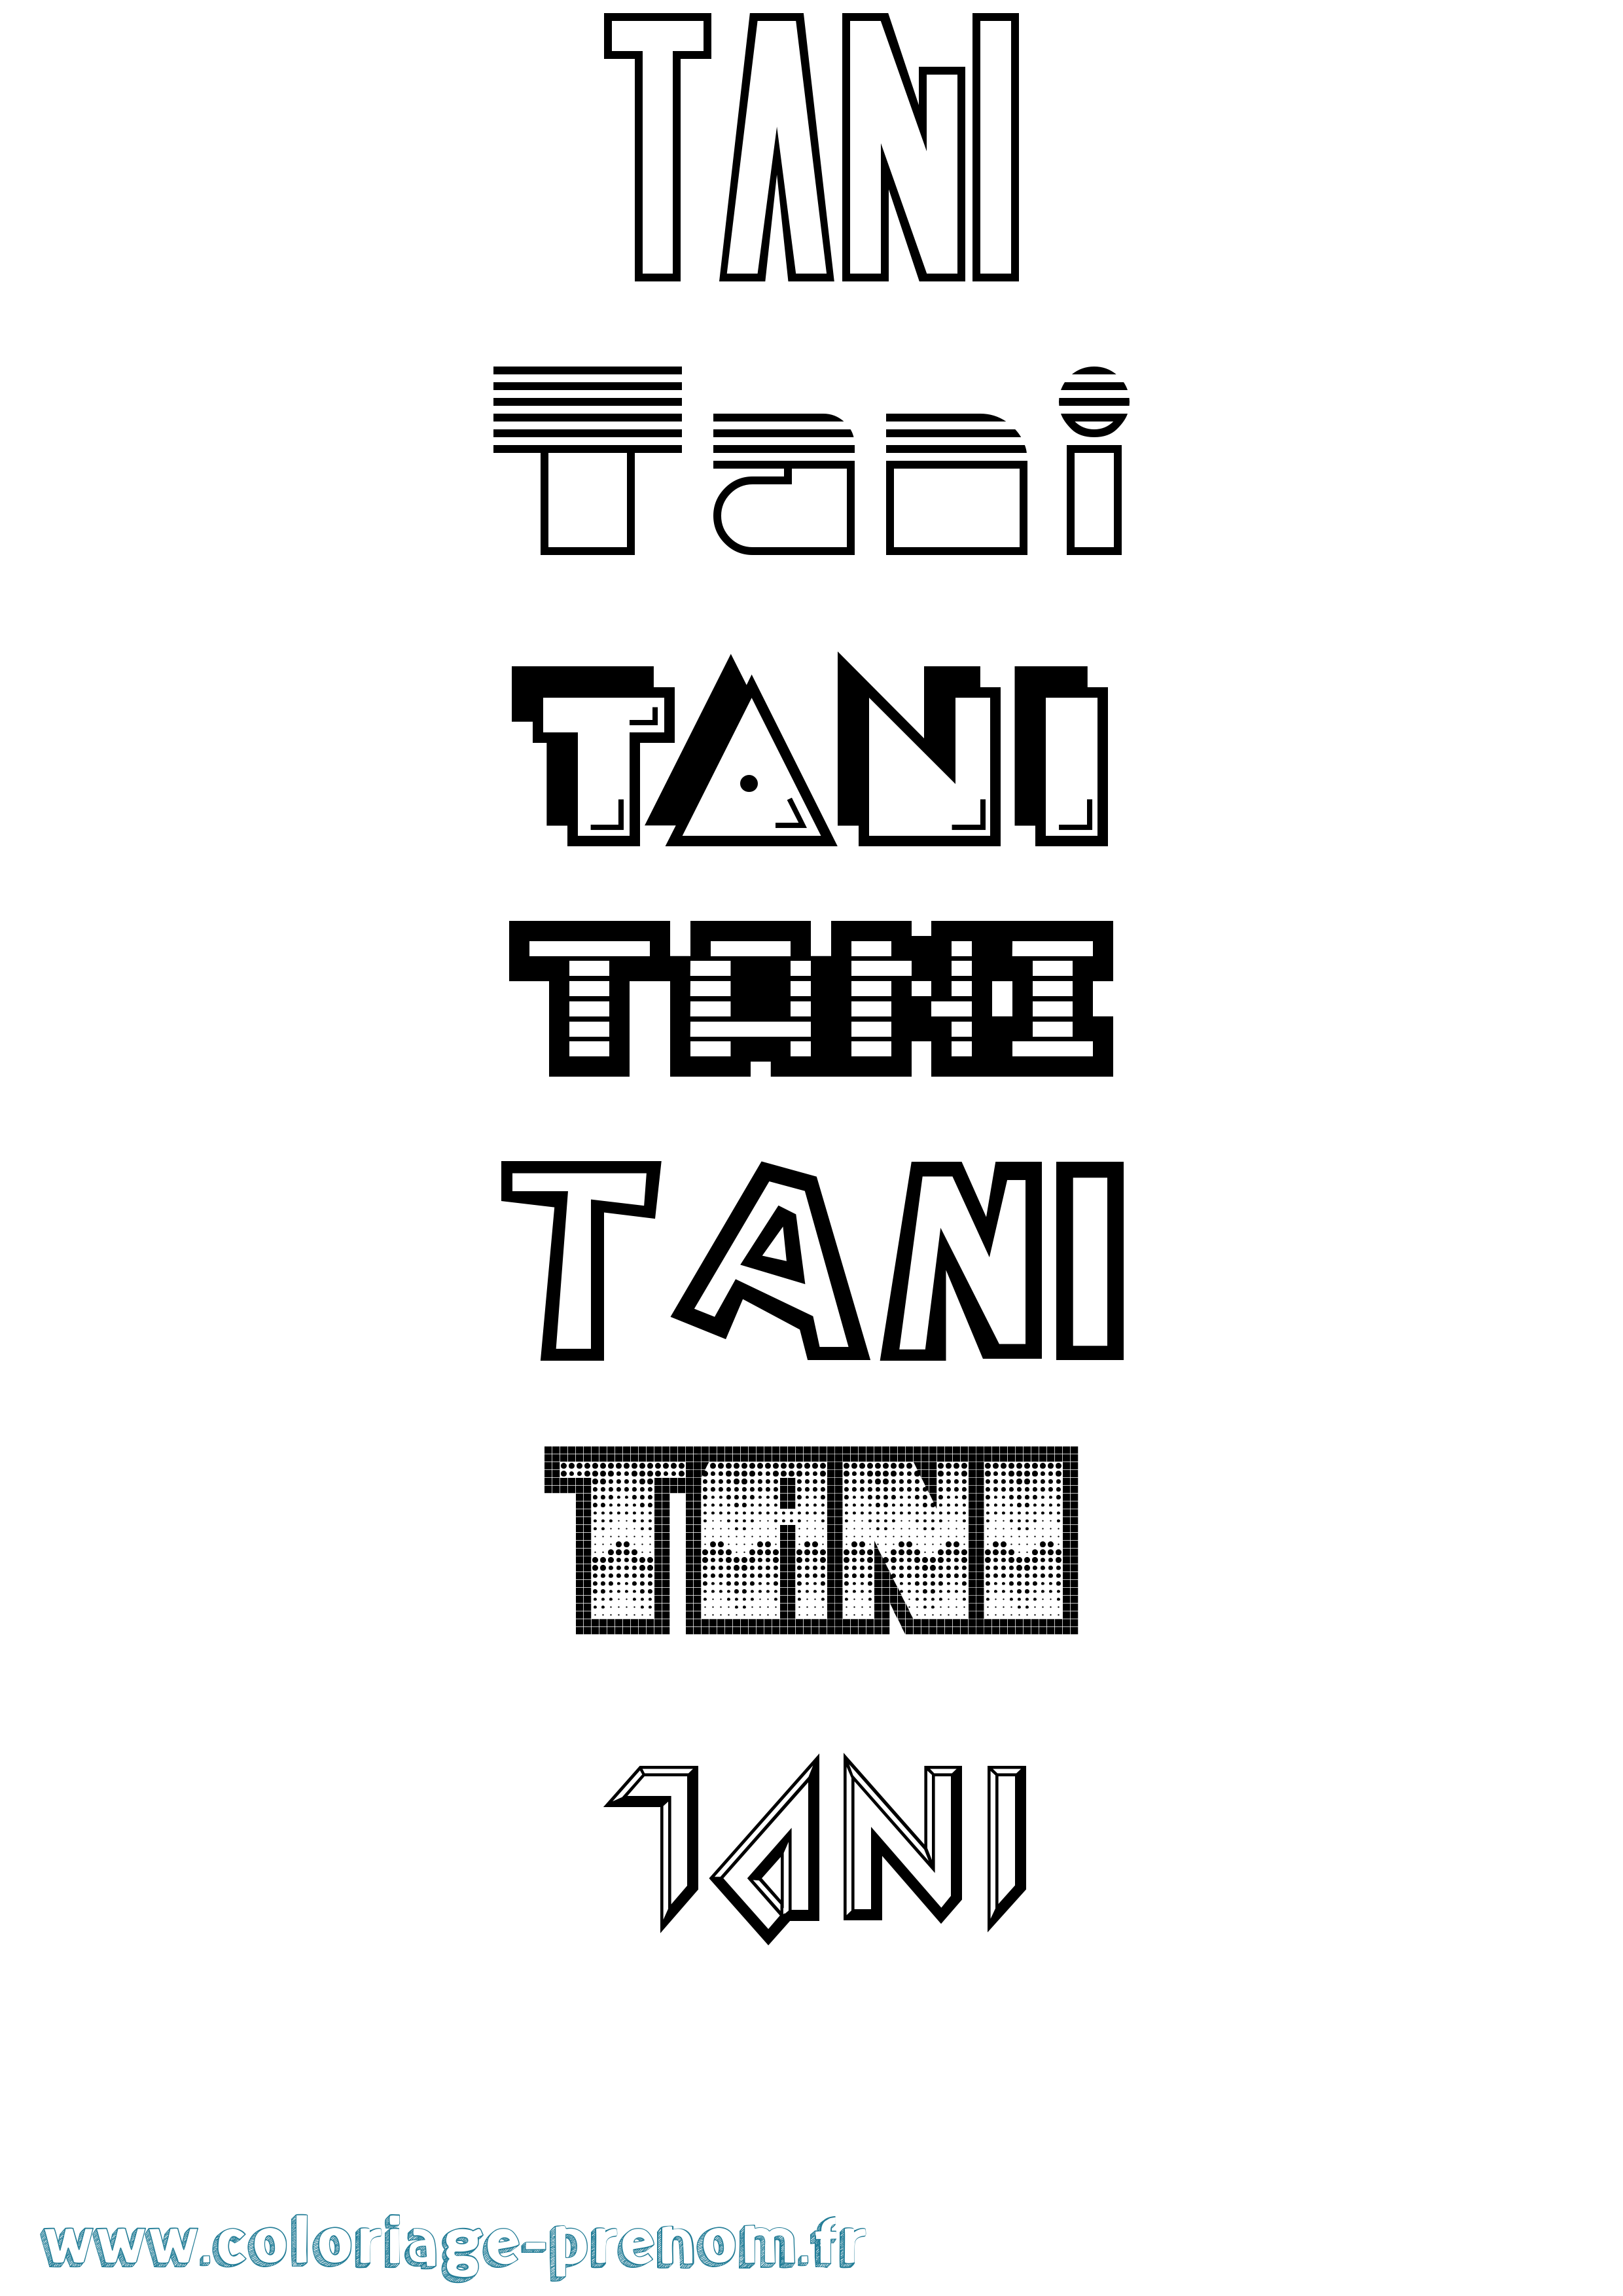 Coloriage prénom Tani Jeux Vidéos